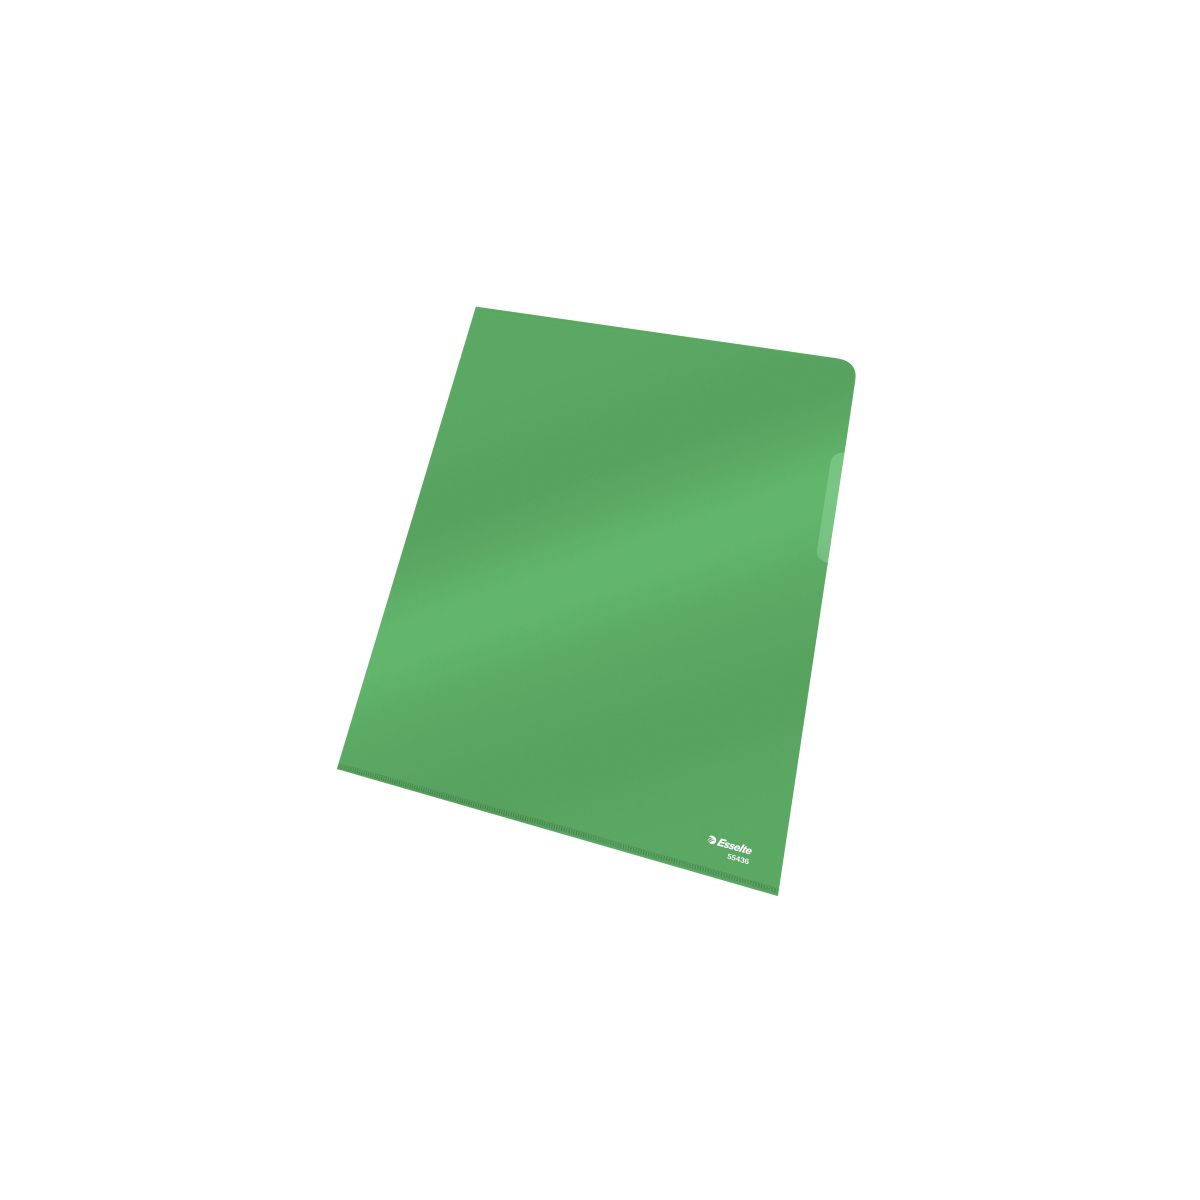 Ofertówka Esselte A4 kolor: zielony typu L 150 mic. (55436)